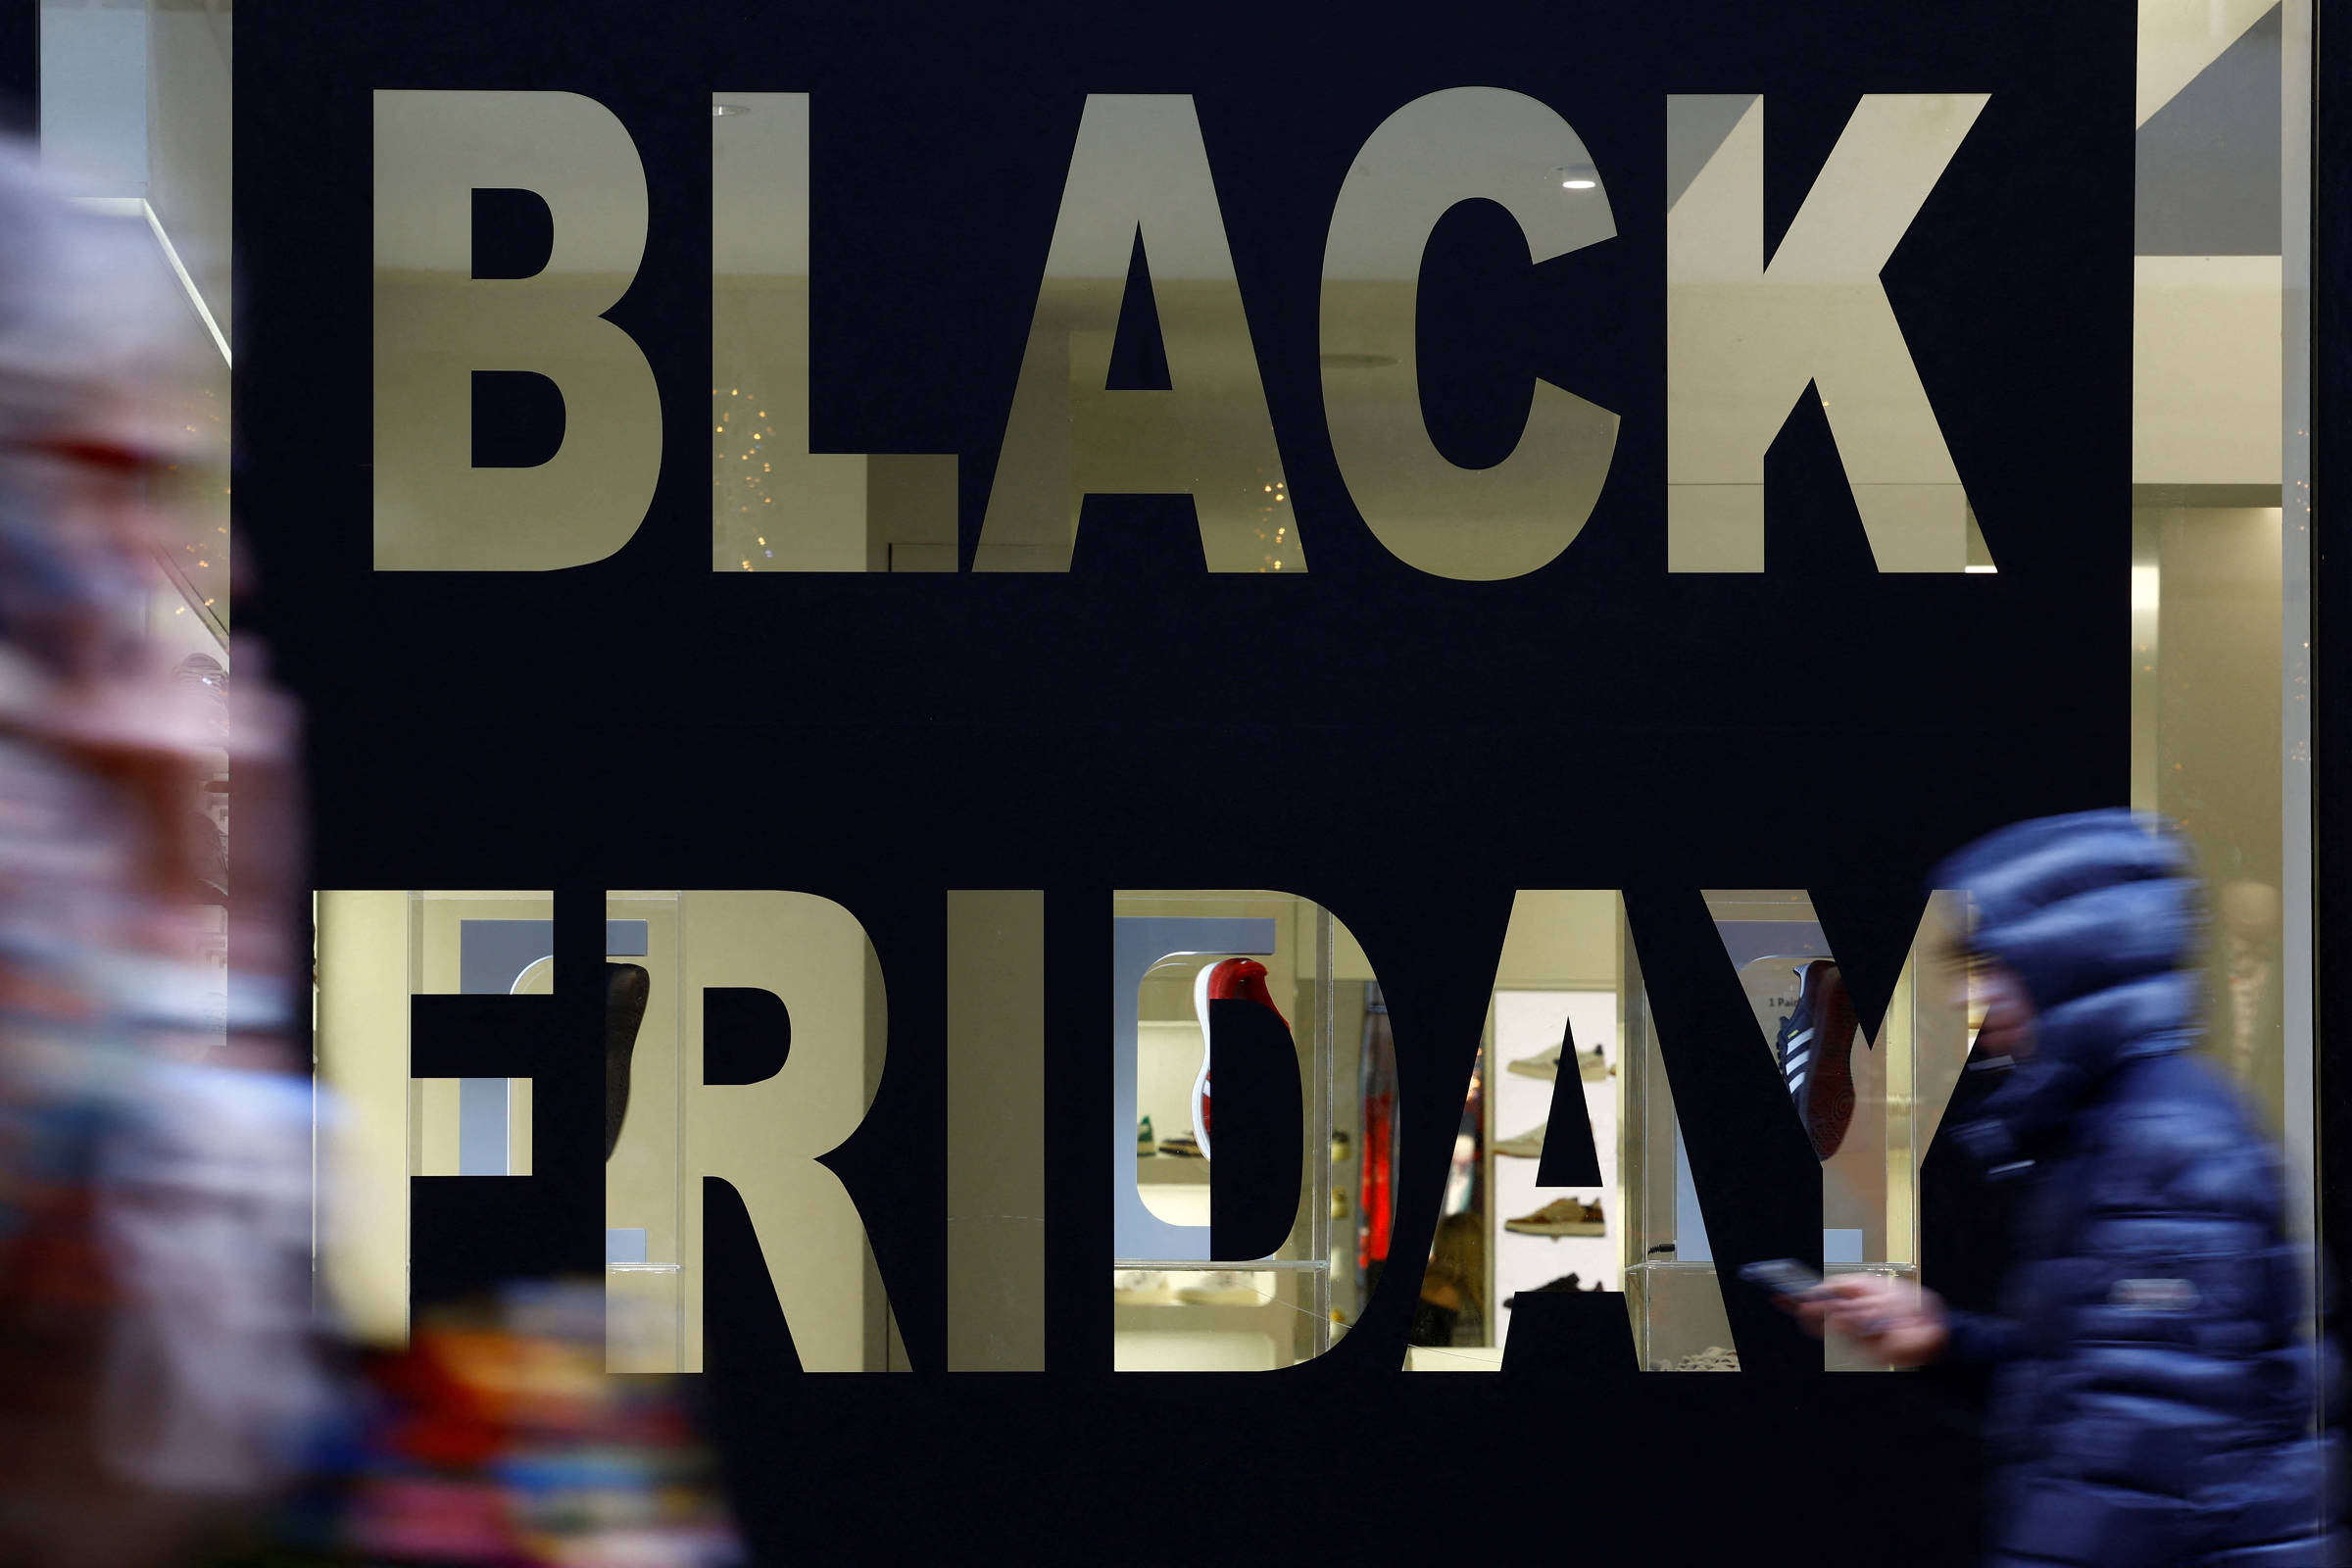 Black Friday: Americanas tem ofertas com até 80% de desconto e 50% de  cashback